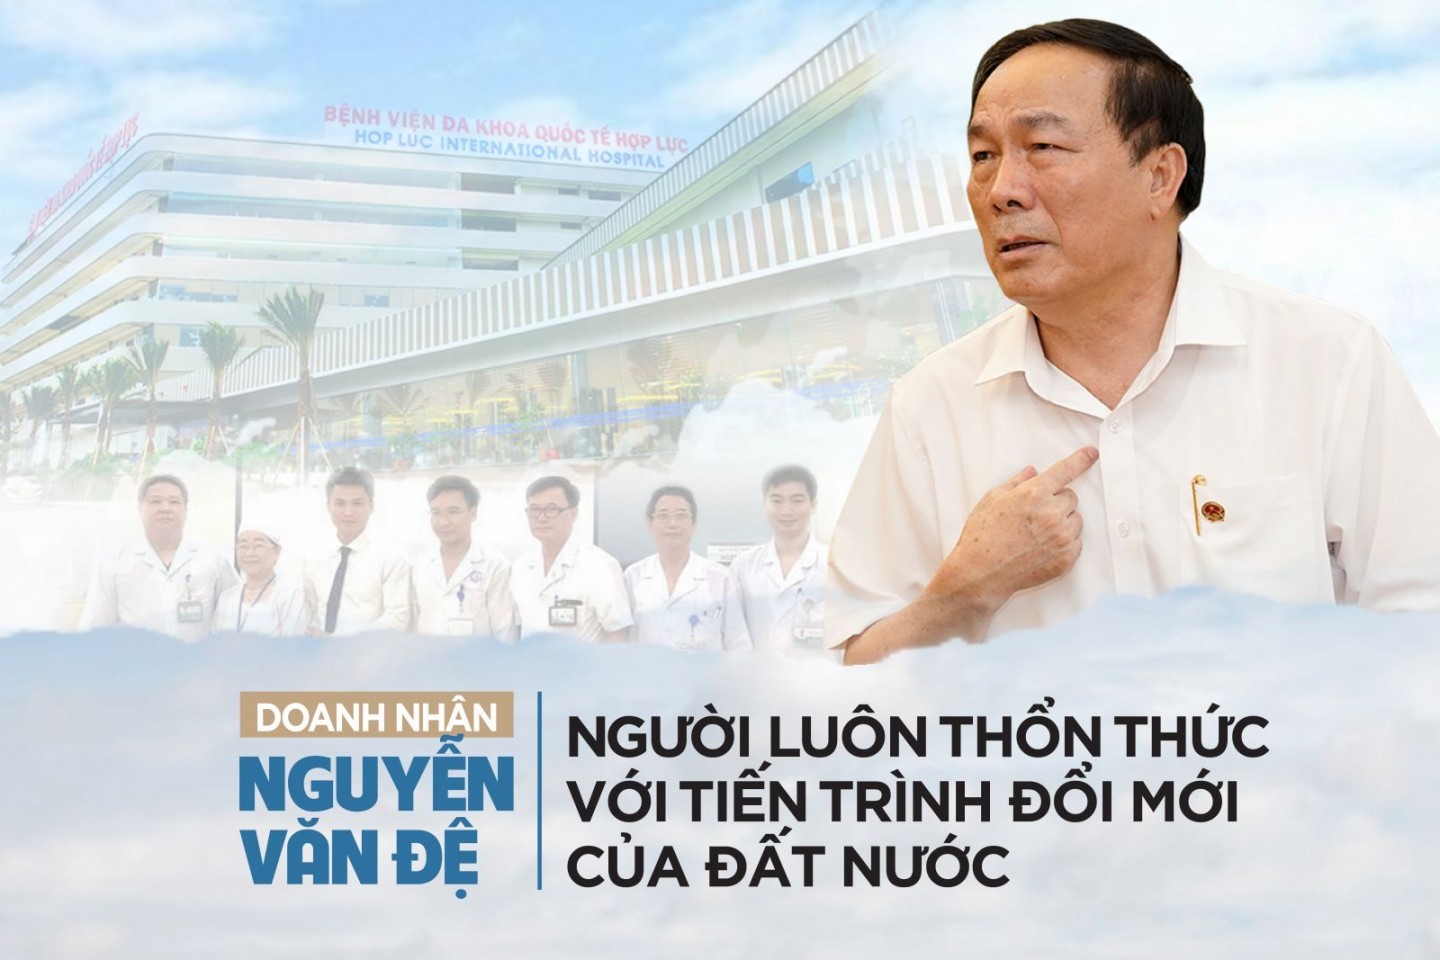 Doanh nhân Nguyễn Văn Đệ: Người luôn thổn thức với tiến trình đổi mới đất nước